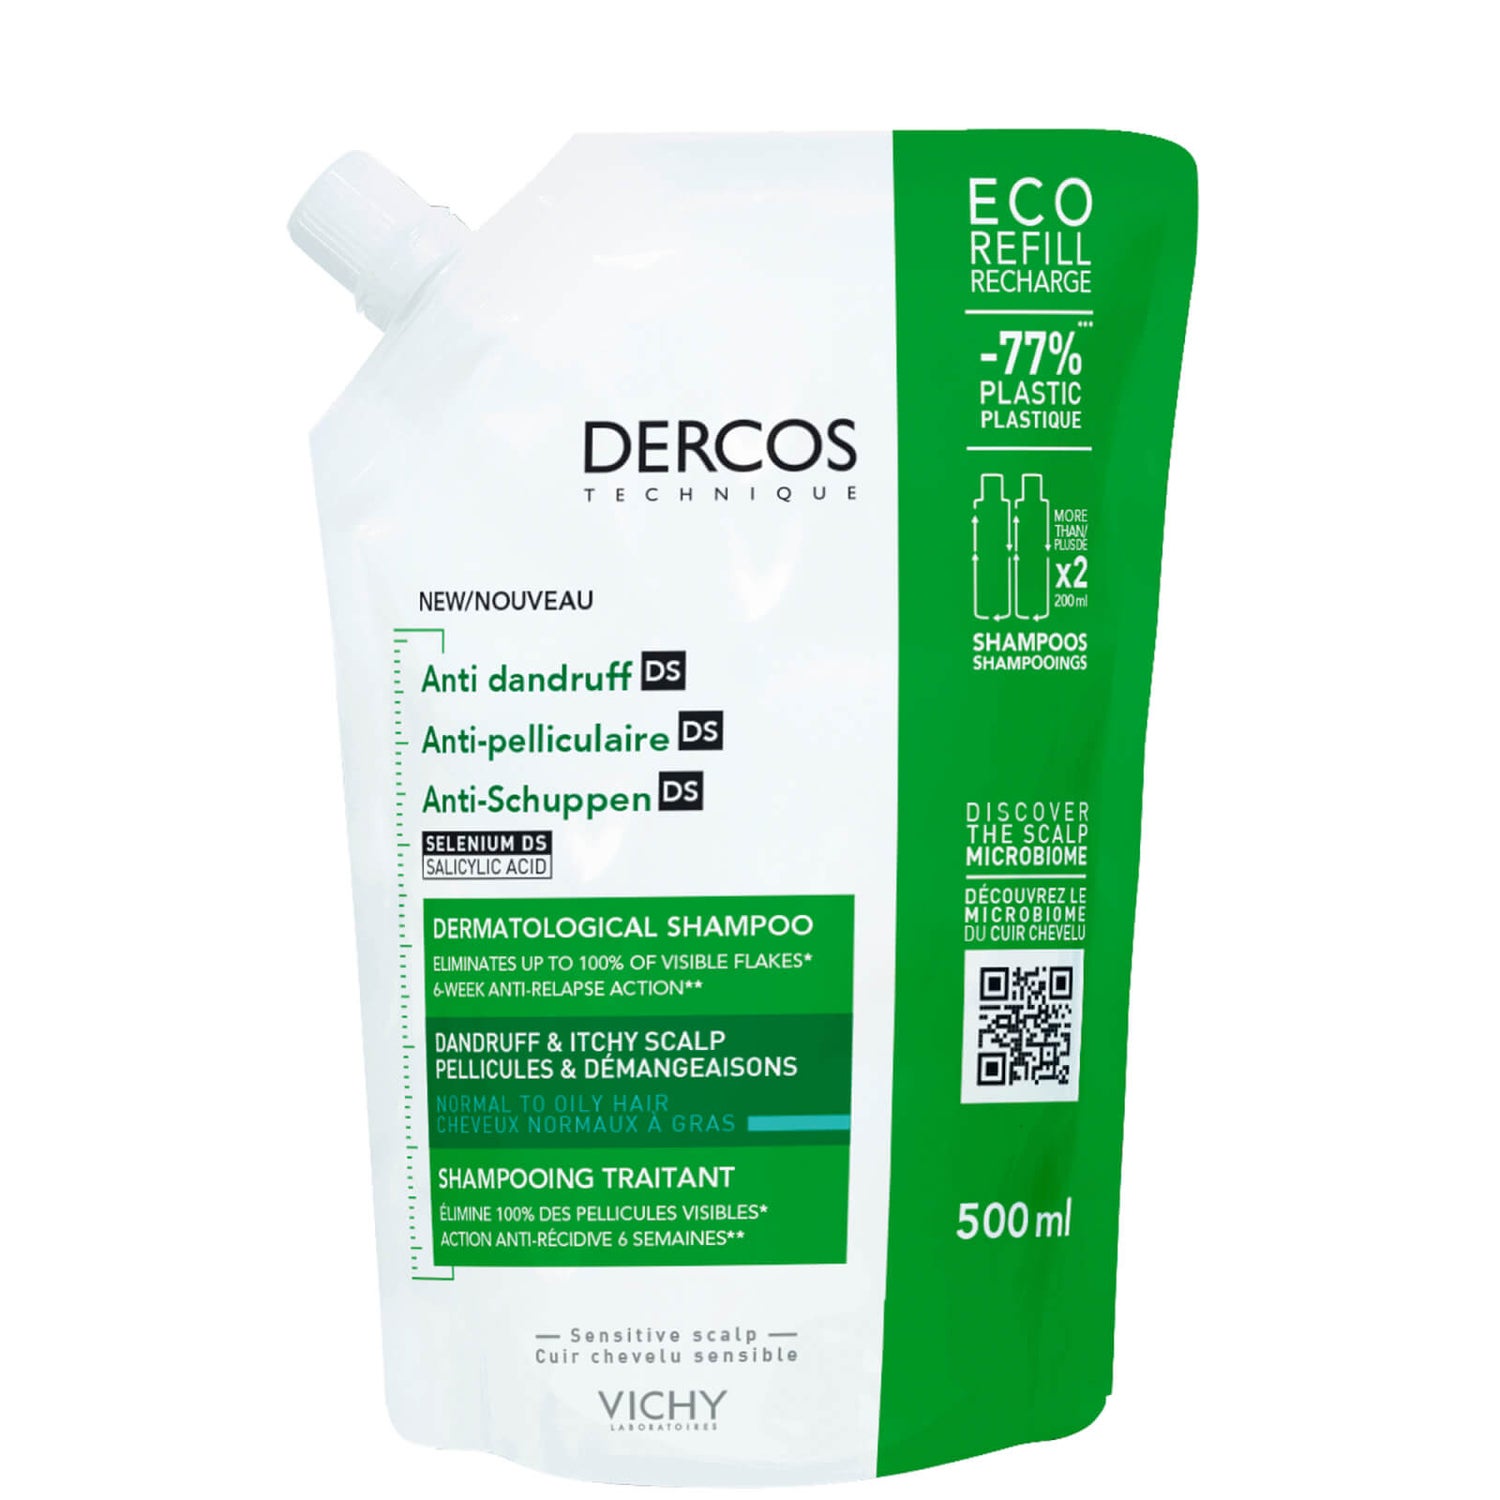 Vichy Dercos Anti-Dandruff DS Shampoo Eco Refill for Normal to Oily Hair zapas szamponu przeciwłupieżowego 500 ml